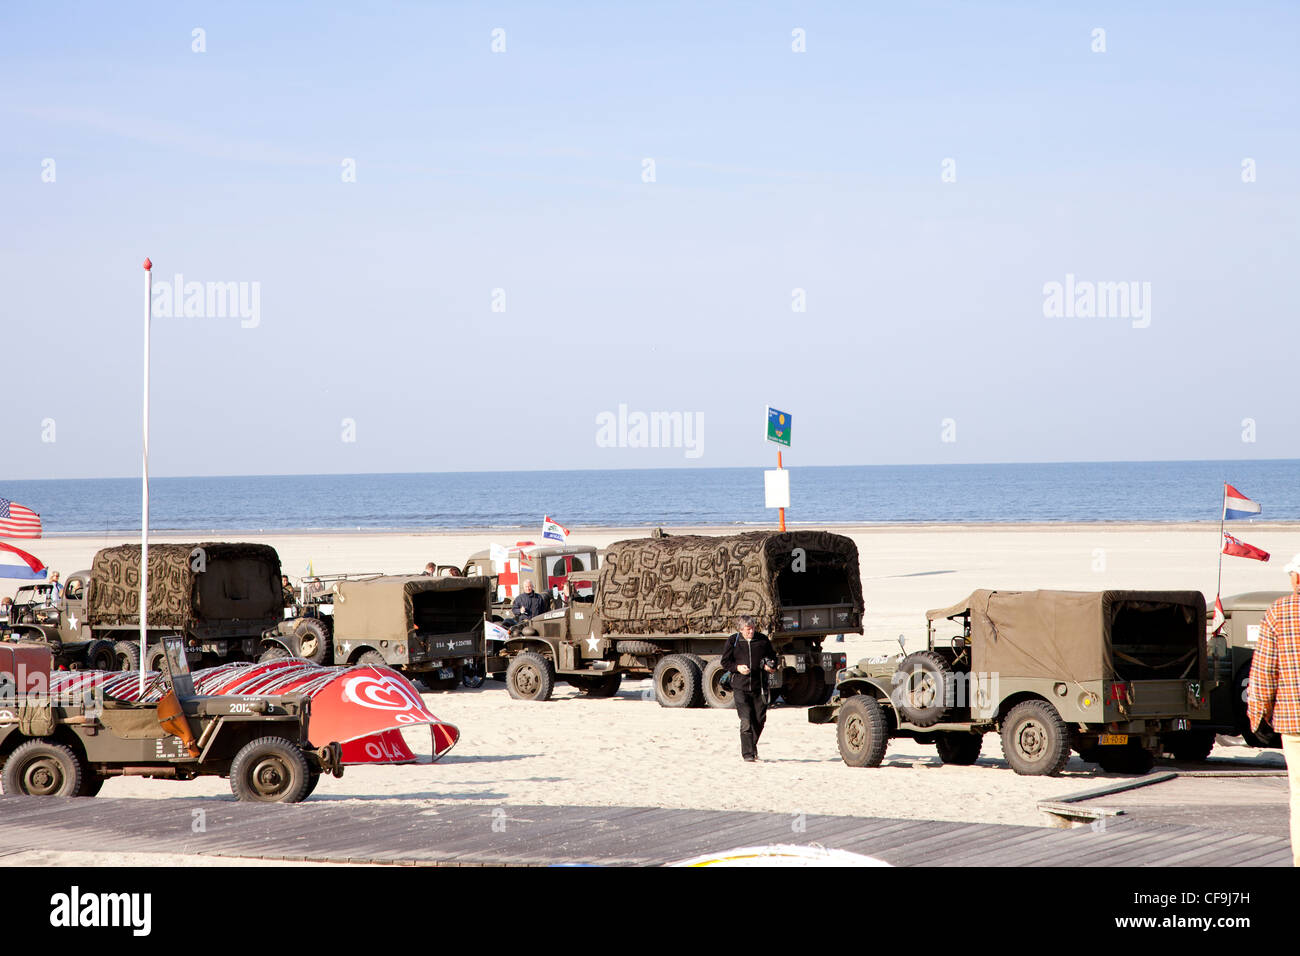 Camion dell'esercito e esercito jeep sulla spiaggia Foto Stock